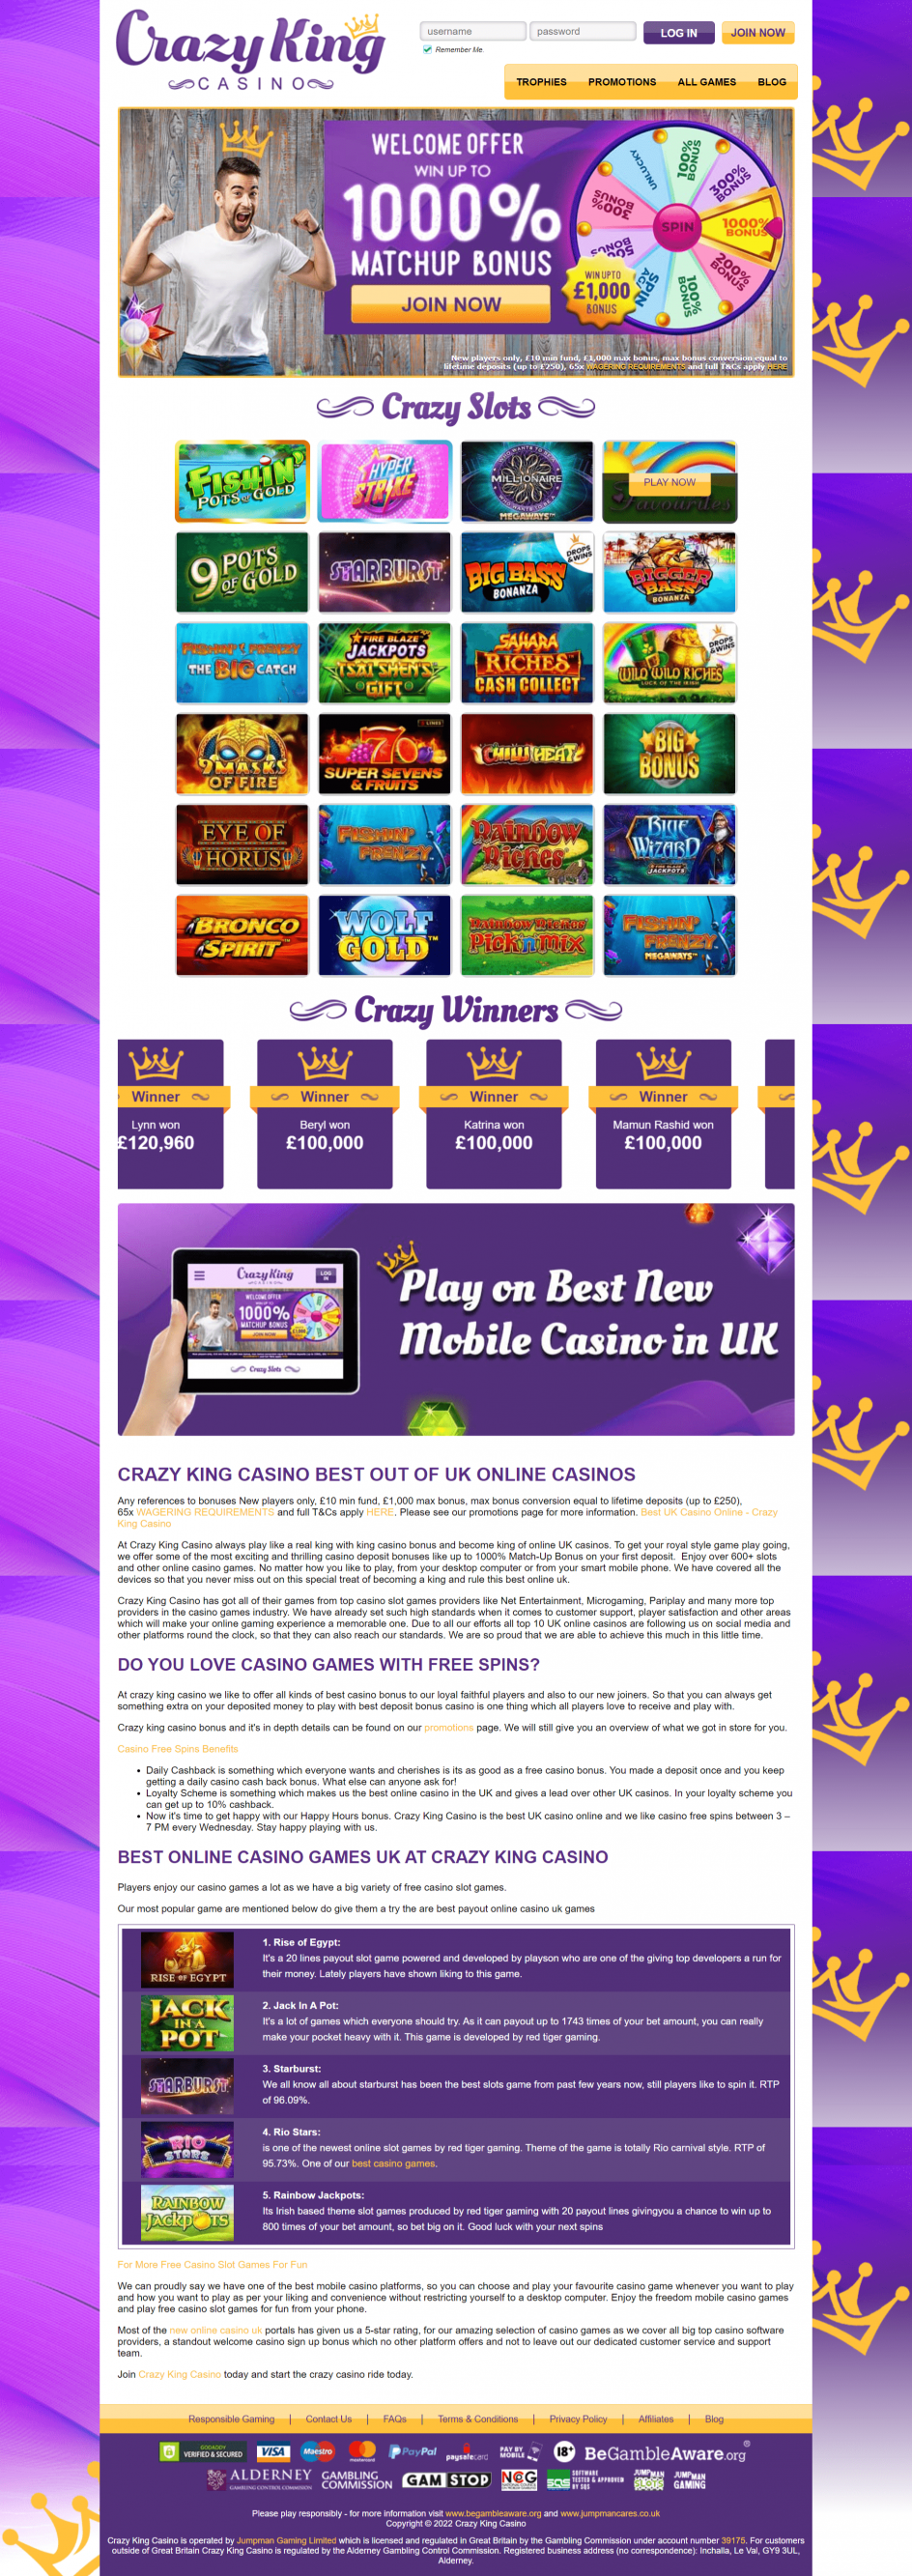 Crazy King Casino Design